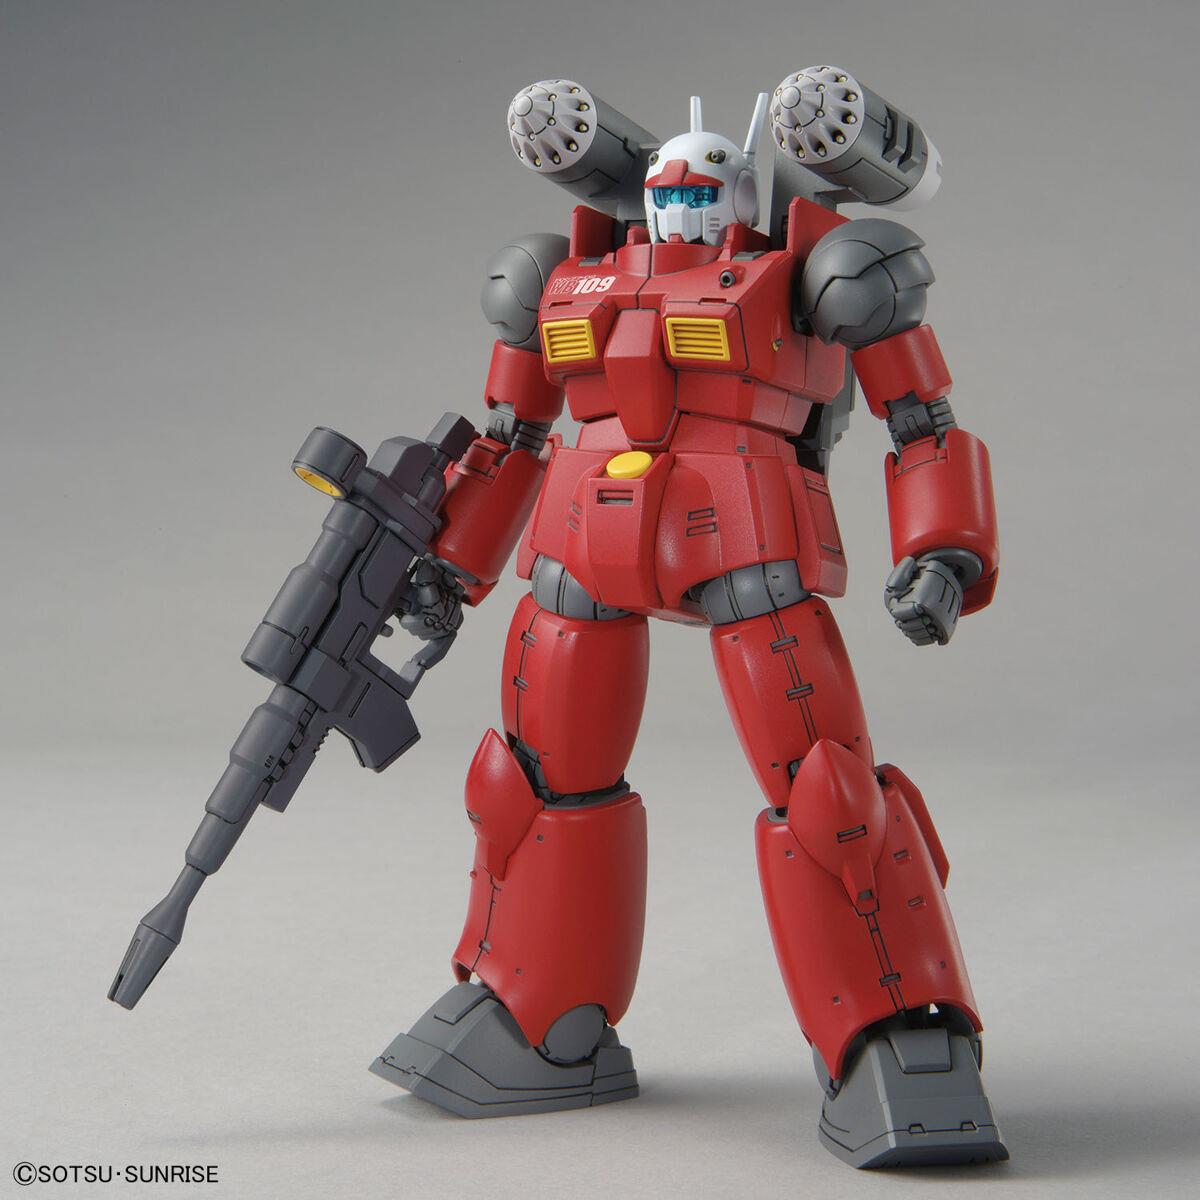 Gundam: Guncannon (Cucuruz Doan’s Island ver.) HG Model